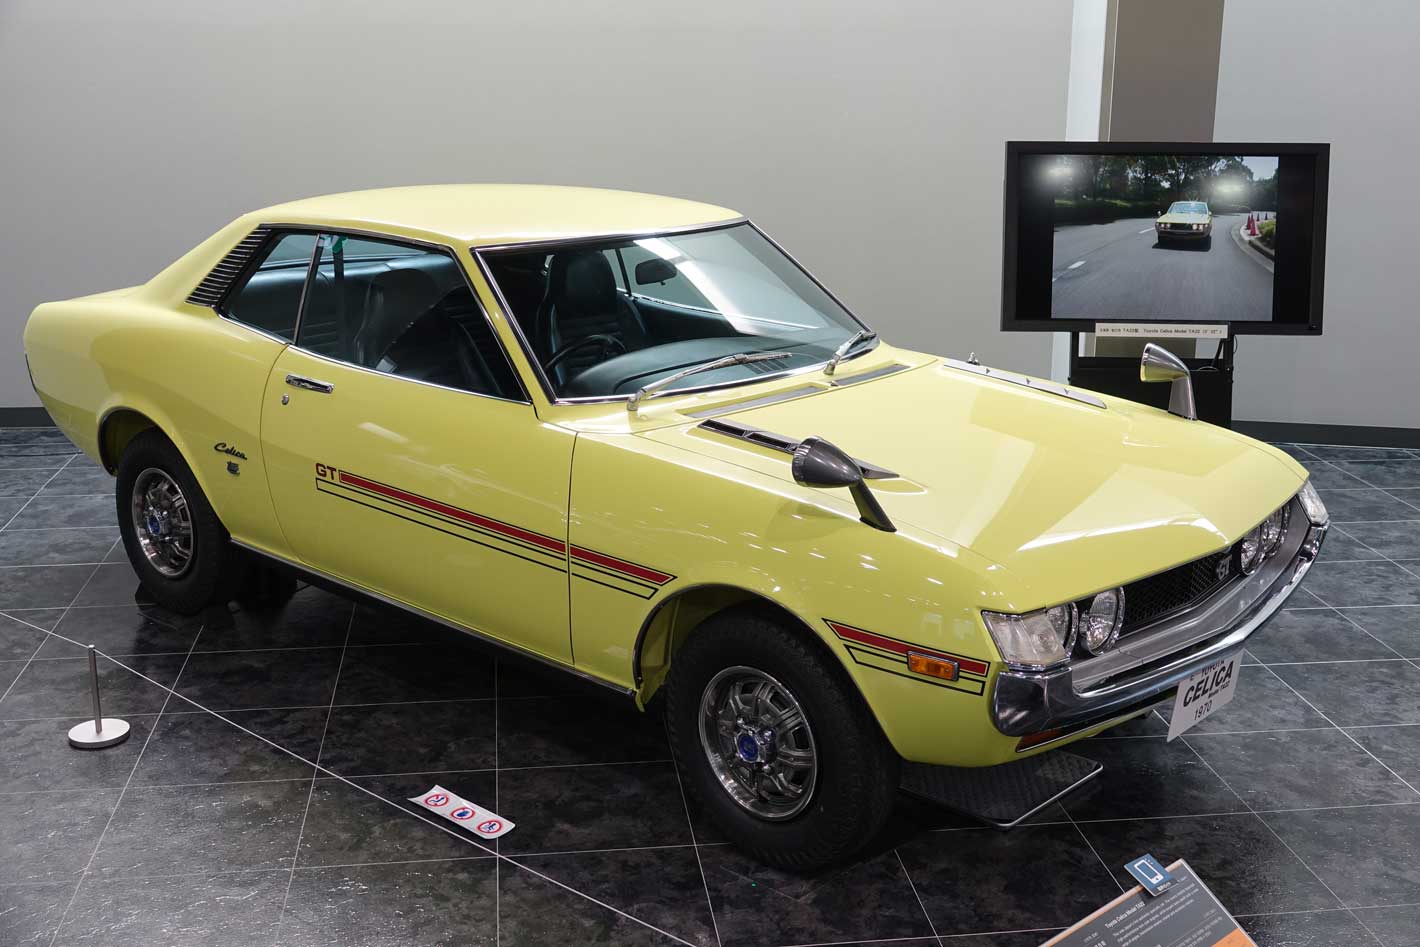 O ponto mais alto da aposta desportiva da Toyota é o lançamento (1970) do primeiro Celica, comum motor de 1,6 litros de 113 cv